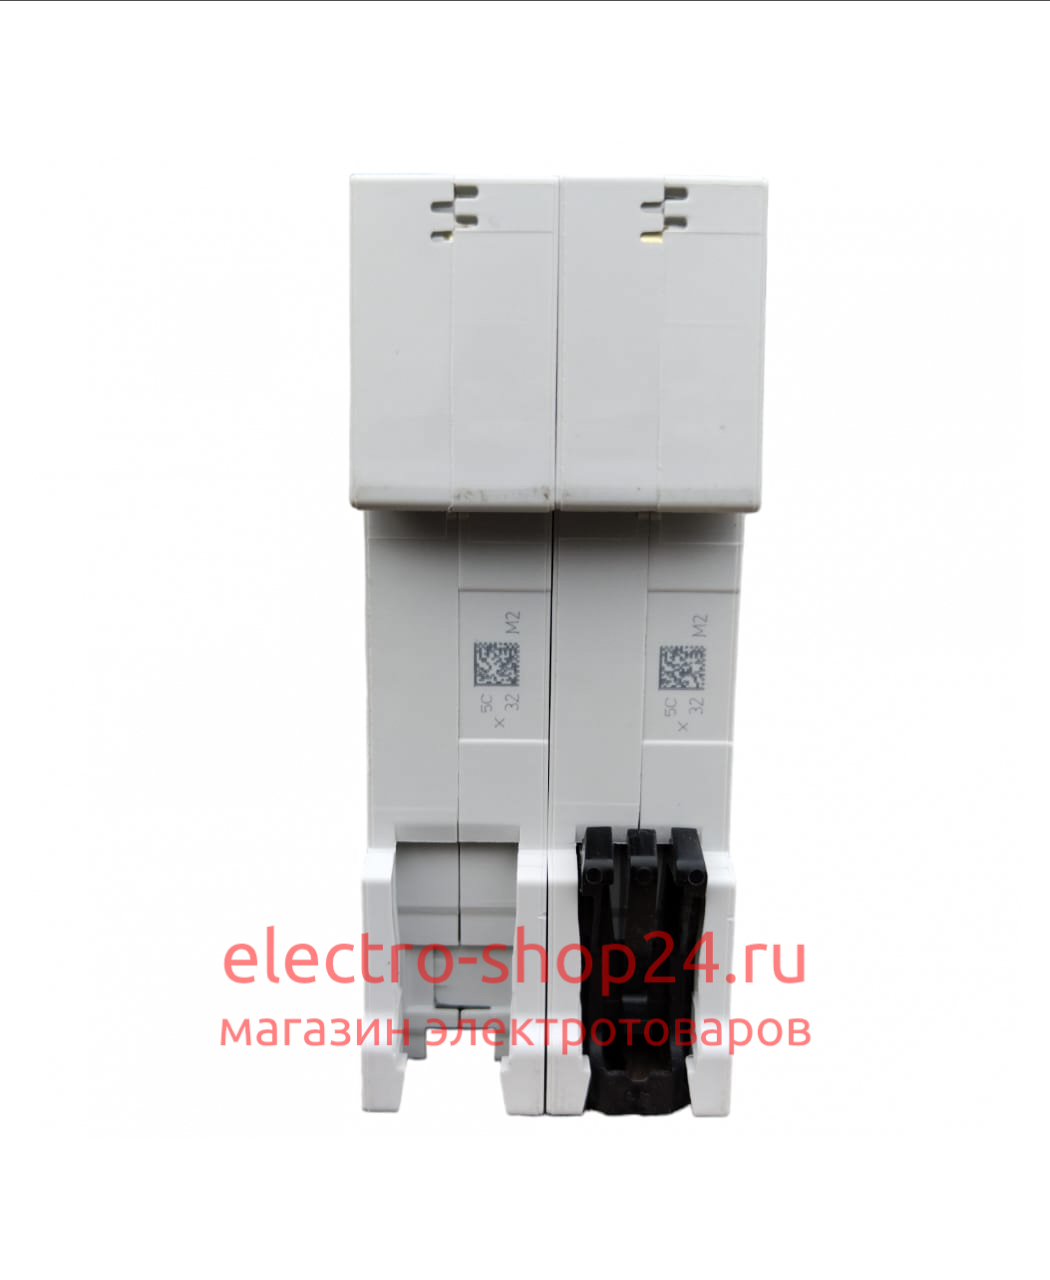 SH202 C40 Автоматический выключатель 2-полюсный 40А 6кА (хар-ка C) ABB 2CDS212001R0404 2CDS212001R0404 - магазин электротехники Electroshop